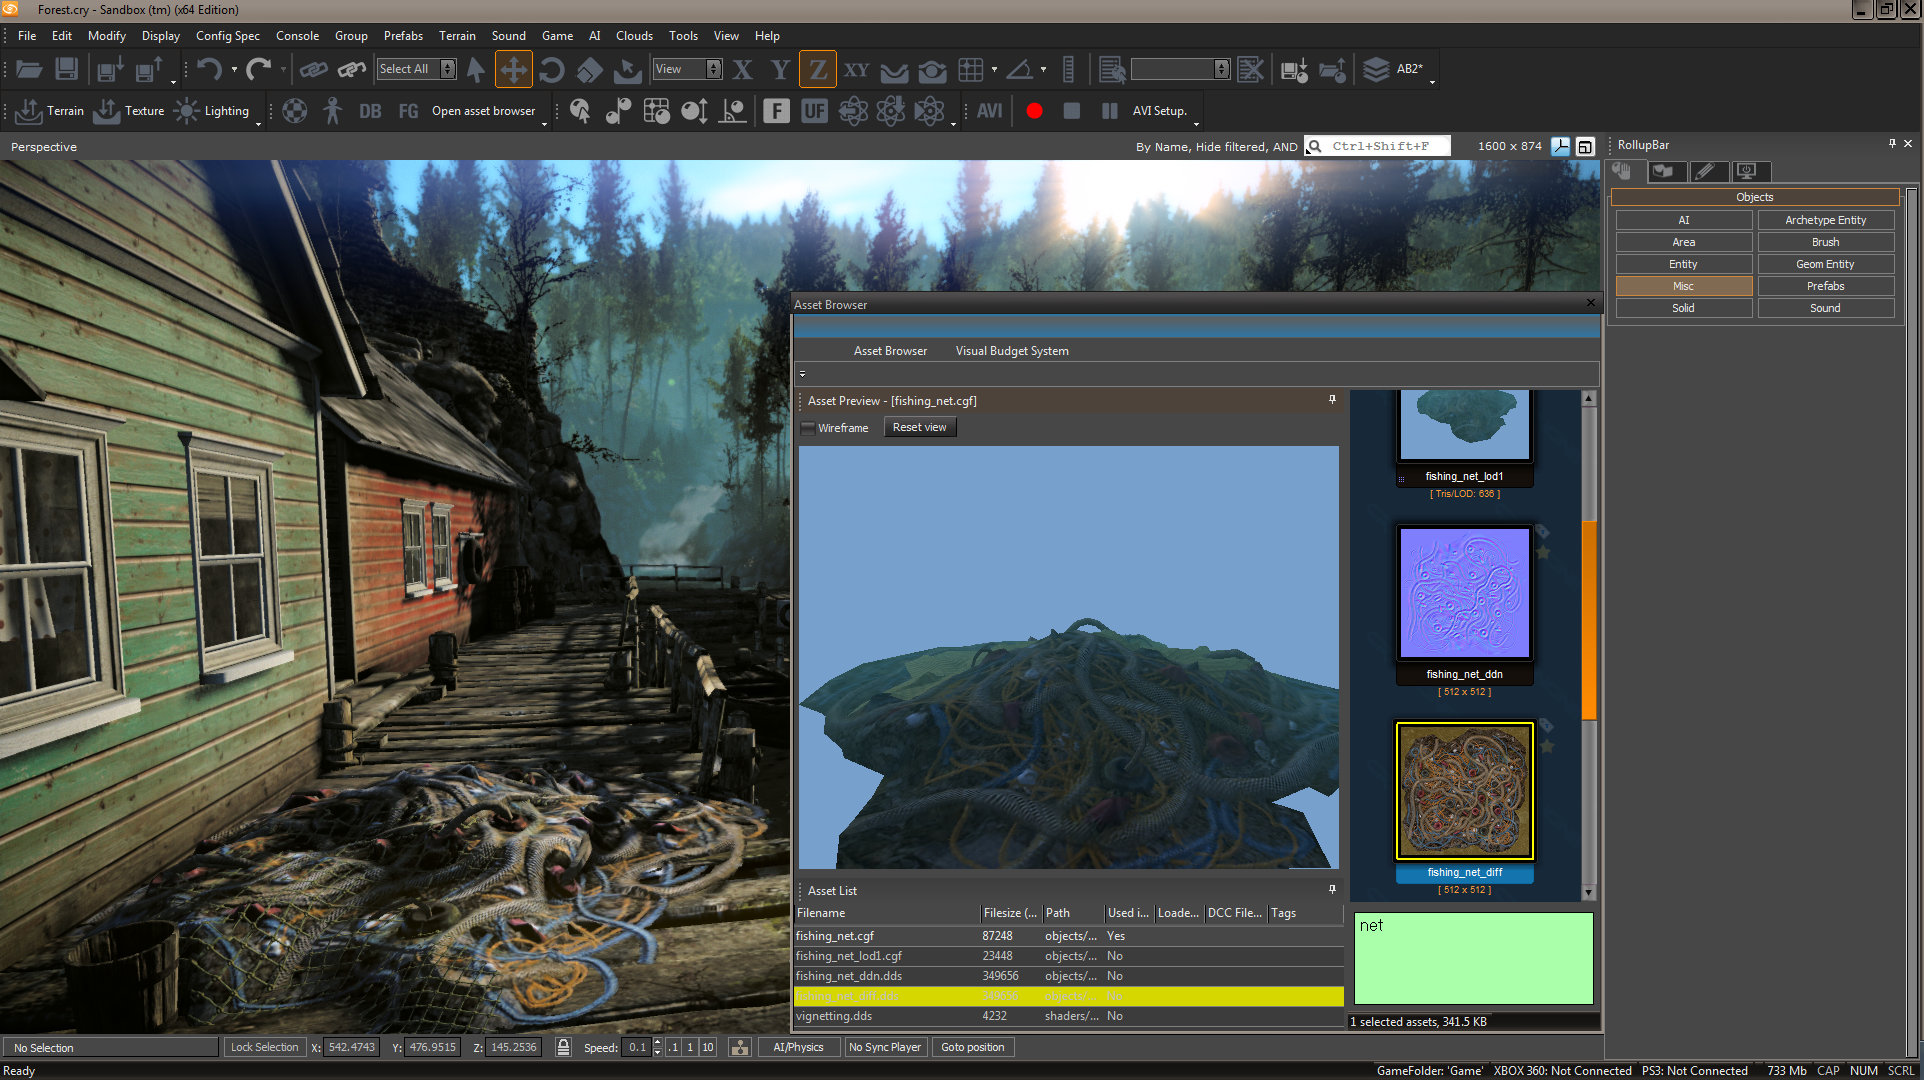 CryENGINE 3 SDK - game engine gratuita dos criadores de Crysis